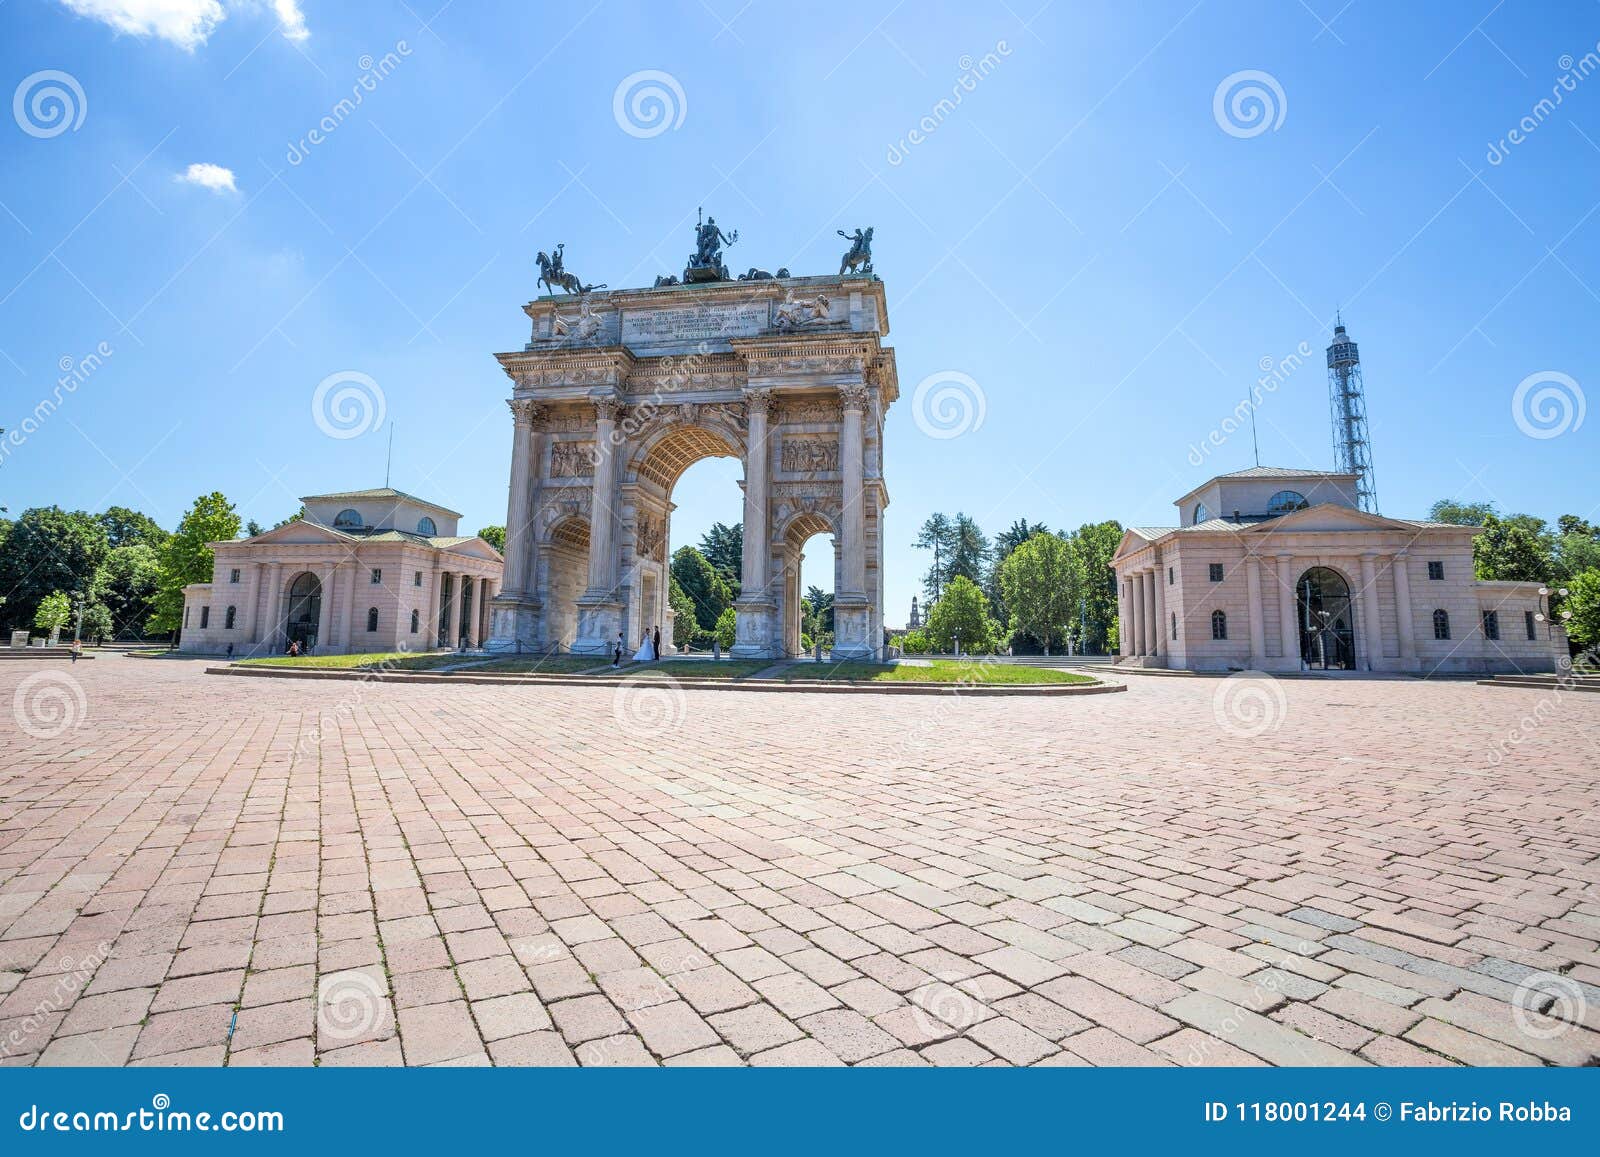 Arco Della Pace, Arch of Peace, Near Sempione Park in City Center of ...